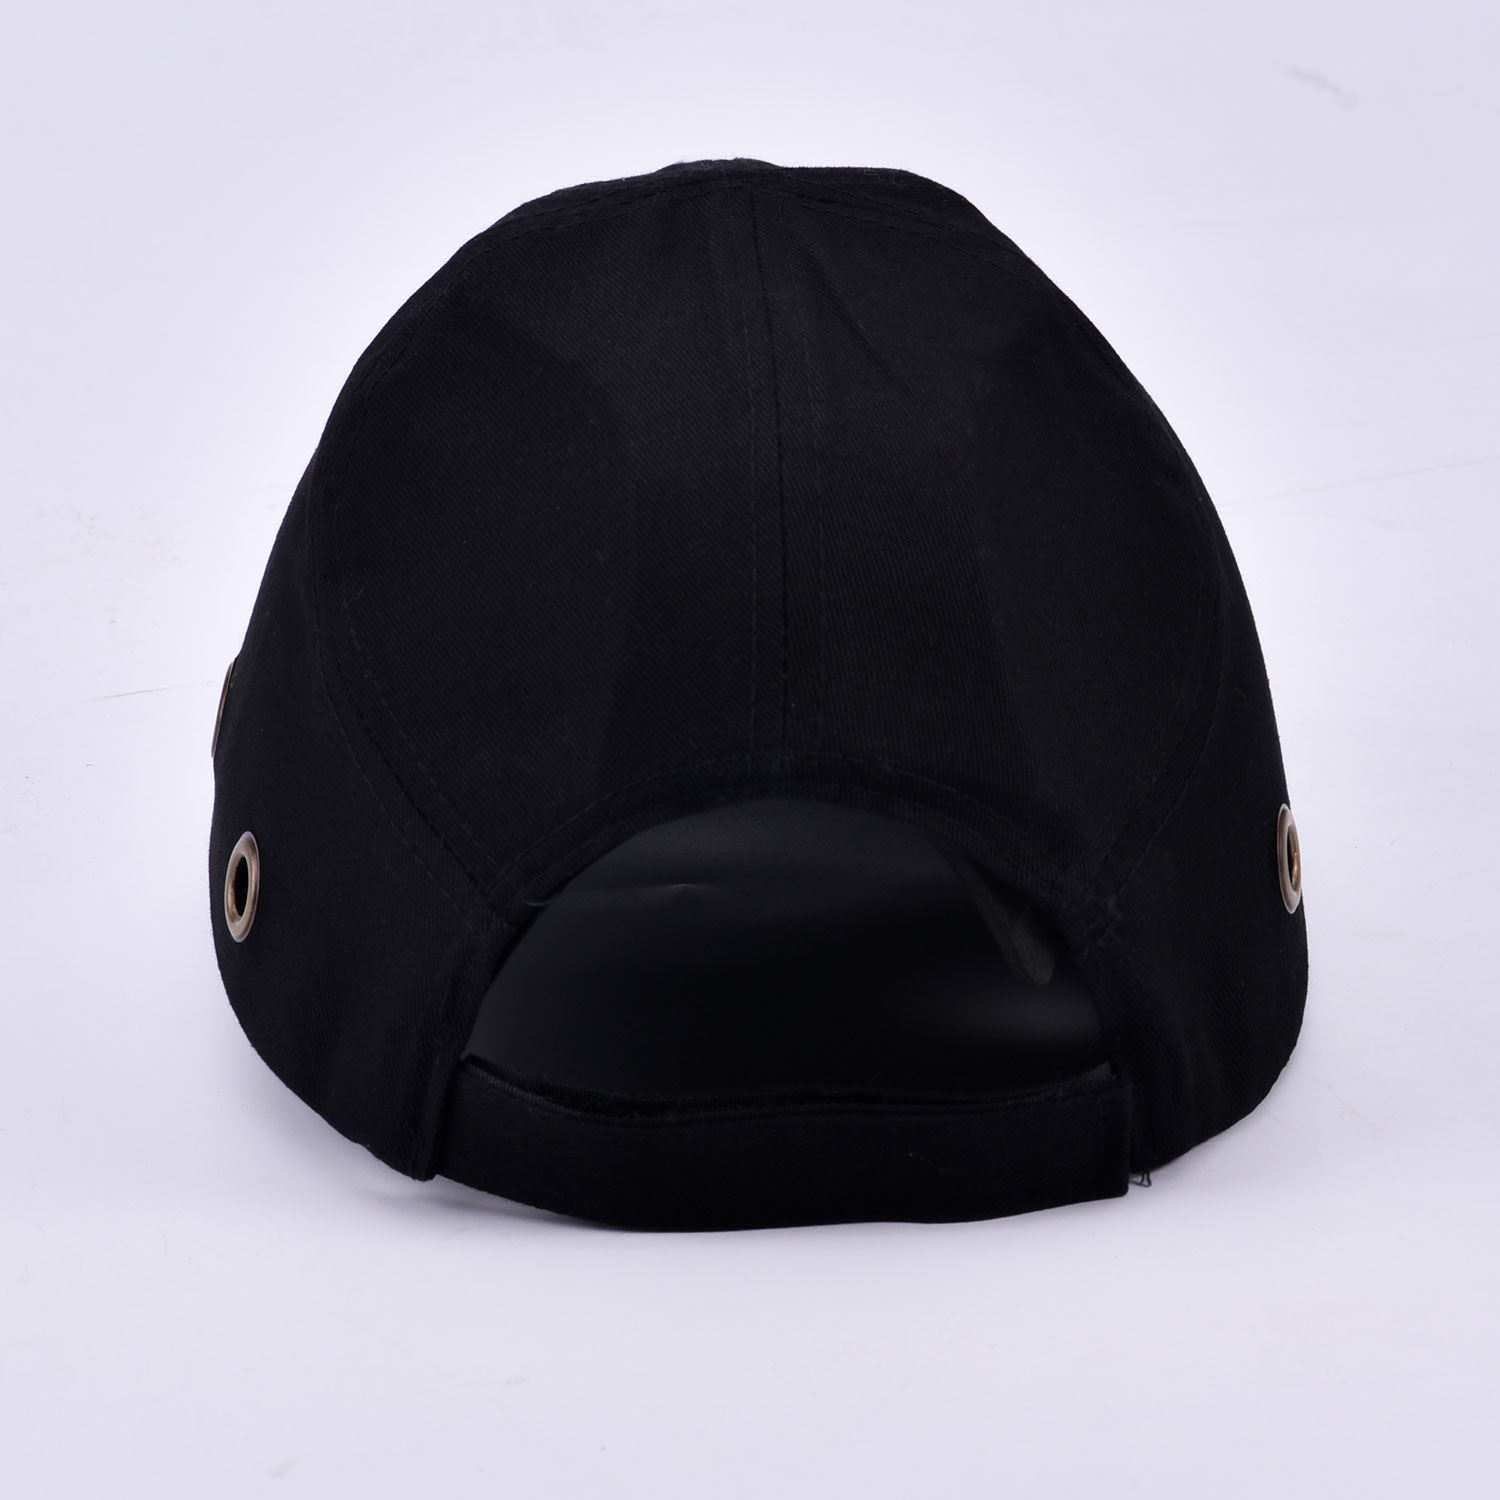 Gorra de seguridad con diseño de béisbol WH001 negro